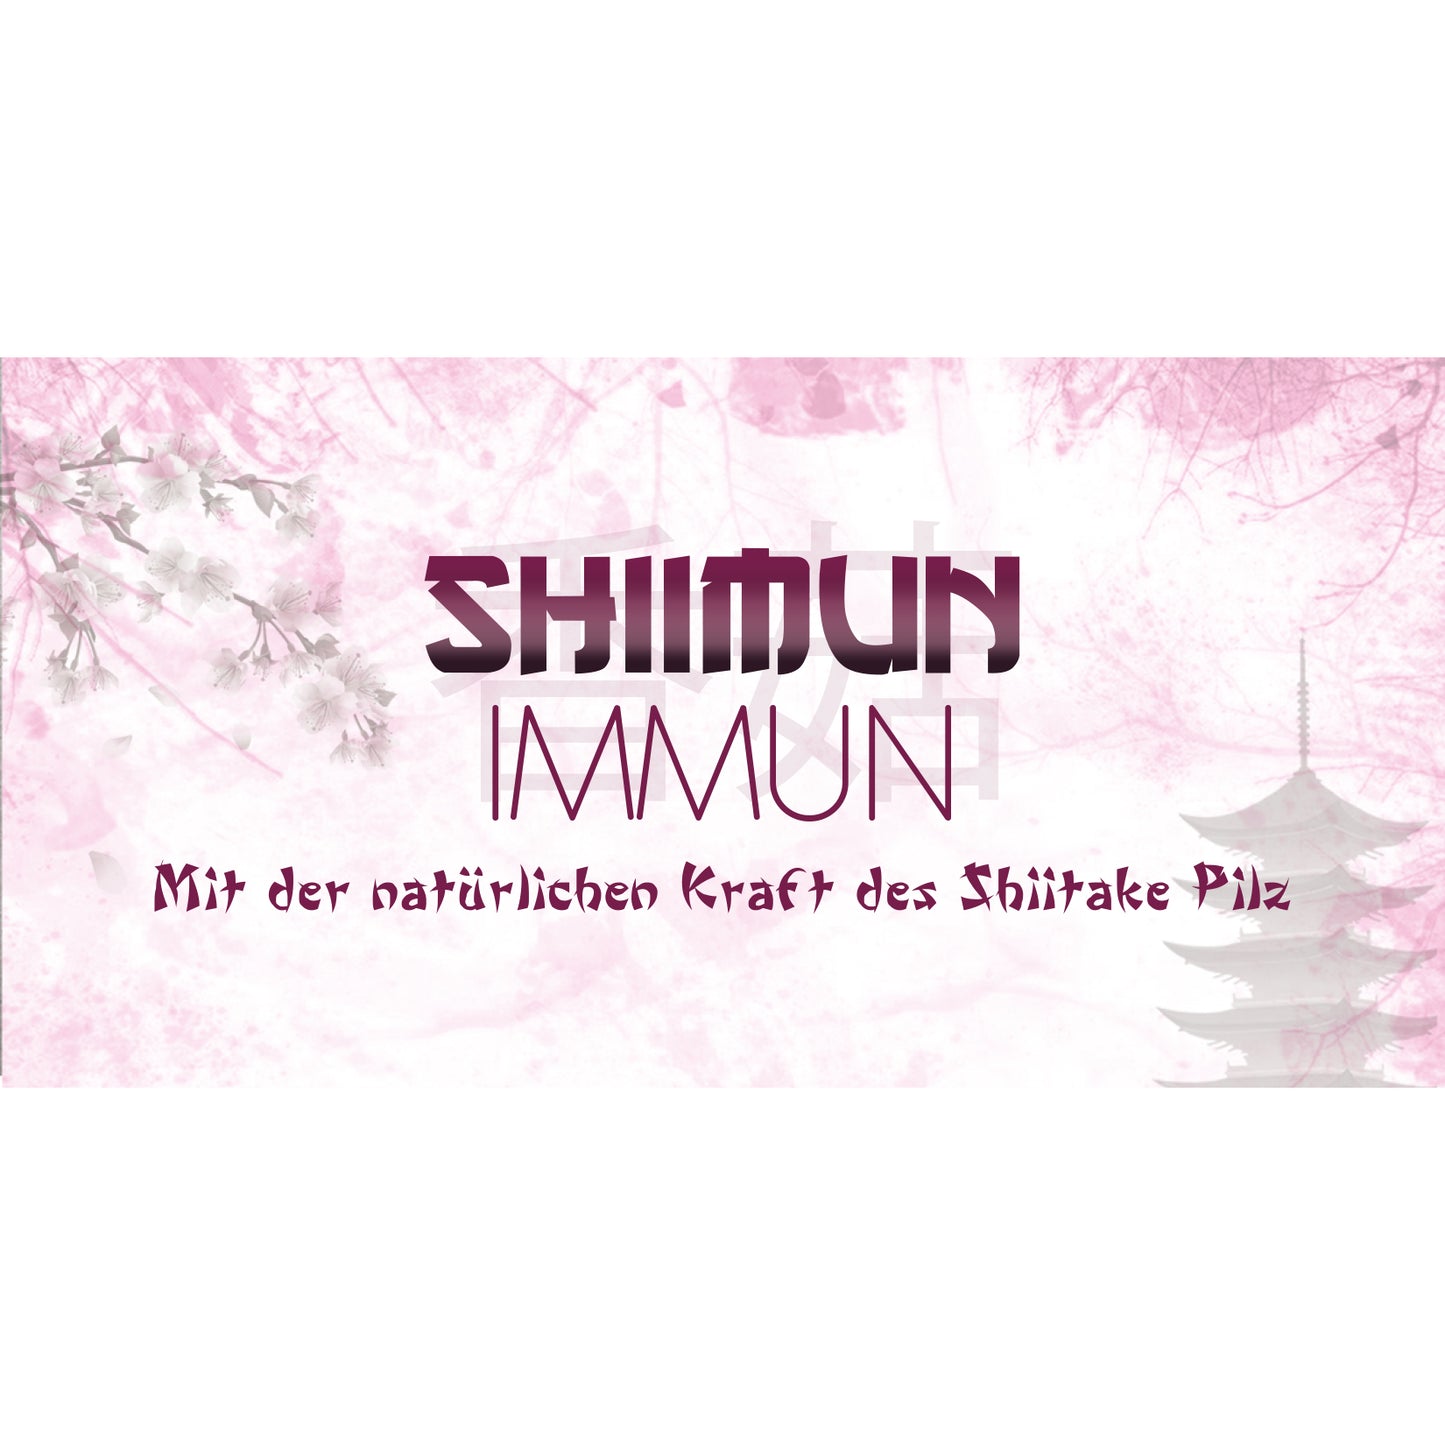 Nahrungsergänzungs für Hunde mit Shiitake - Shiimun Immun Pulver von Bellfor Hundefutter - 50 g